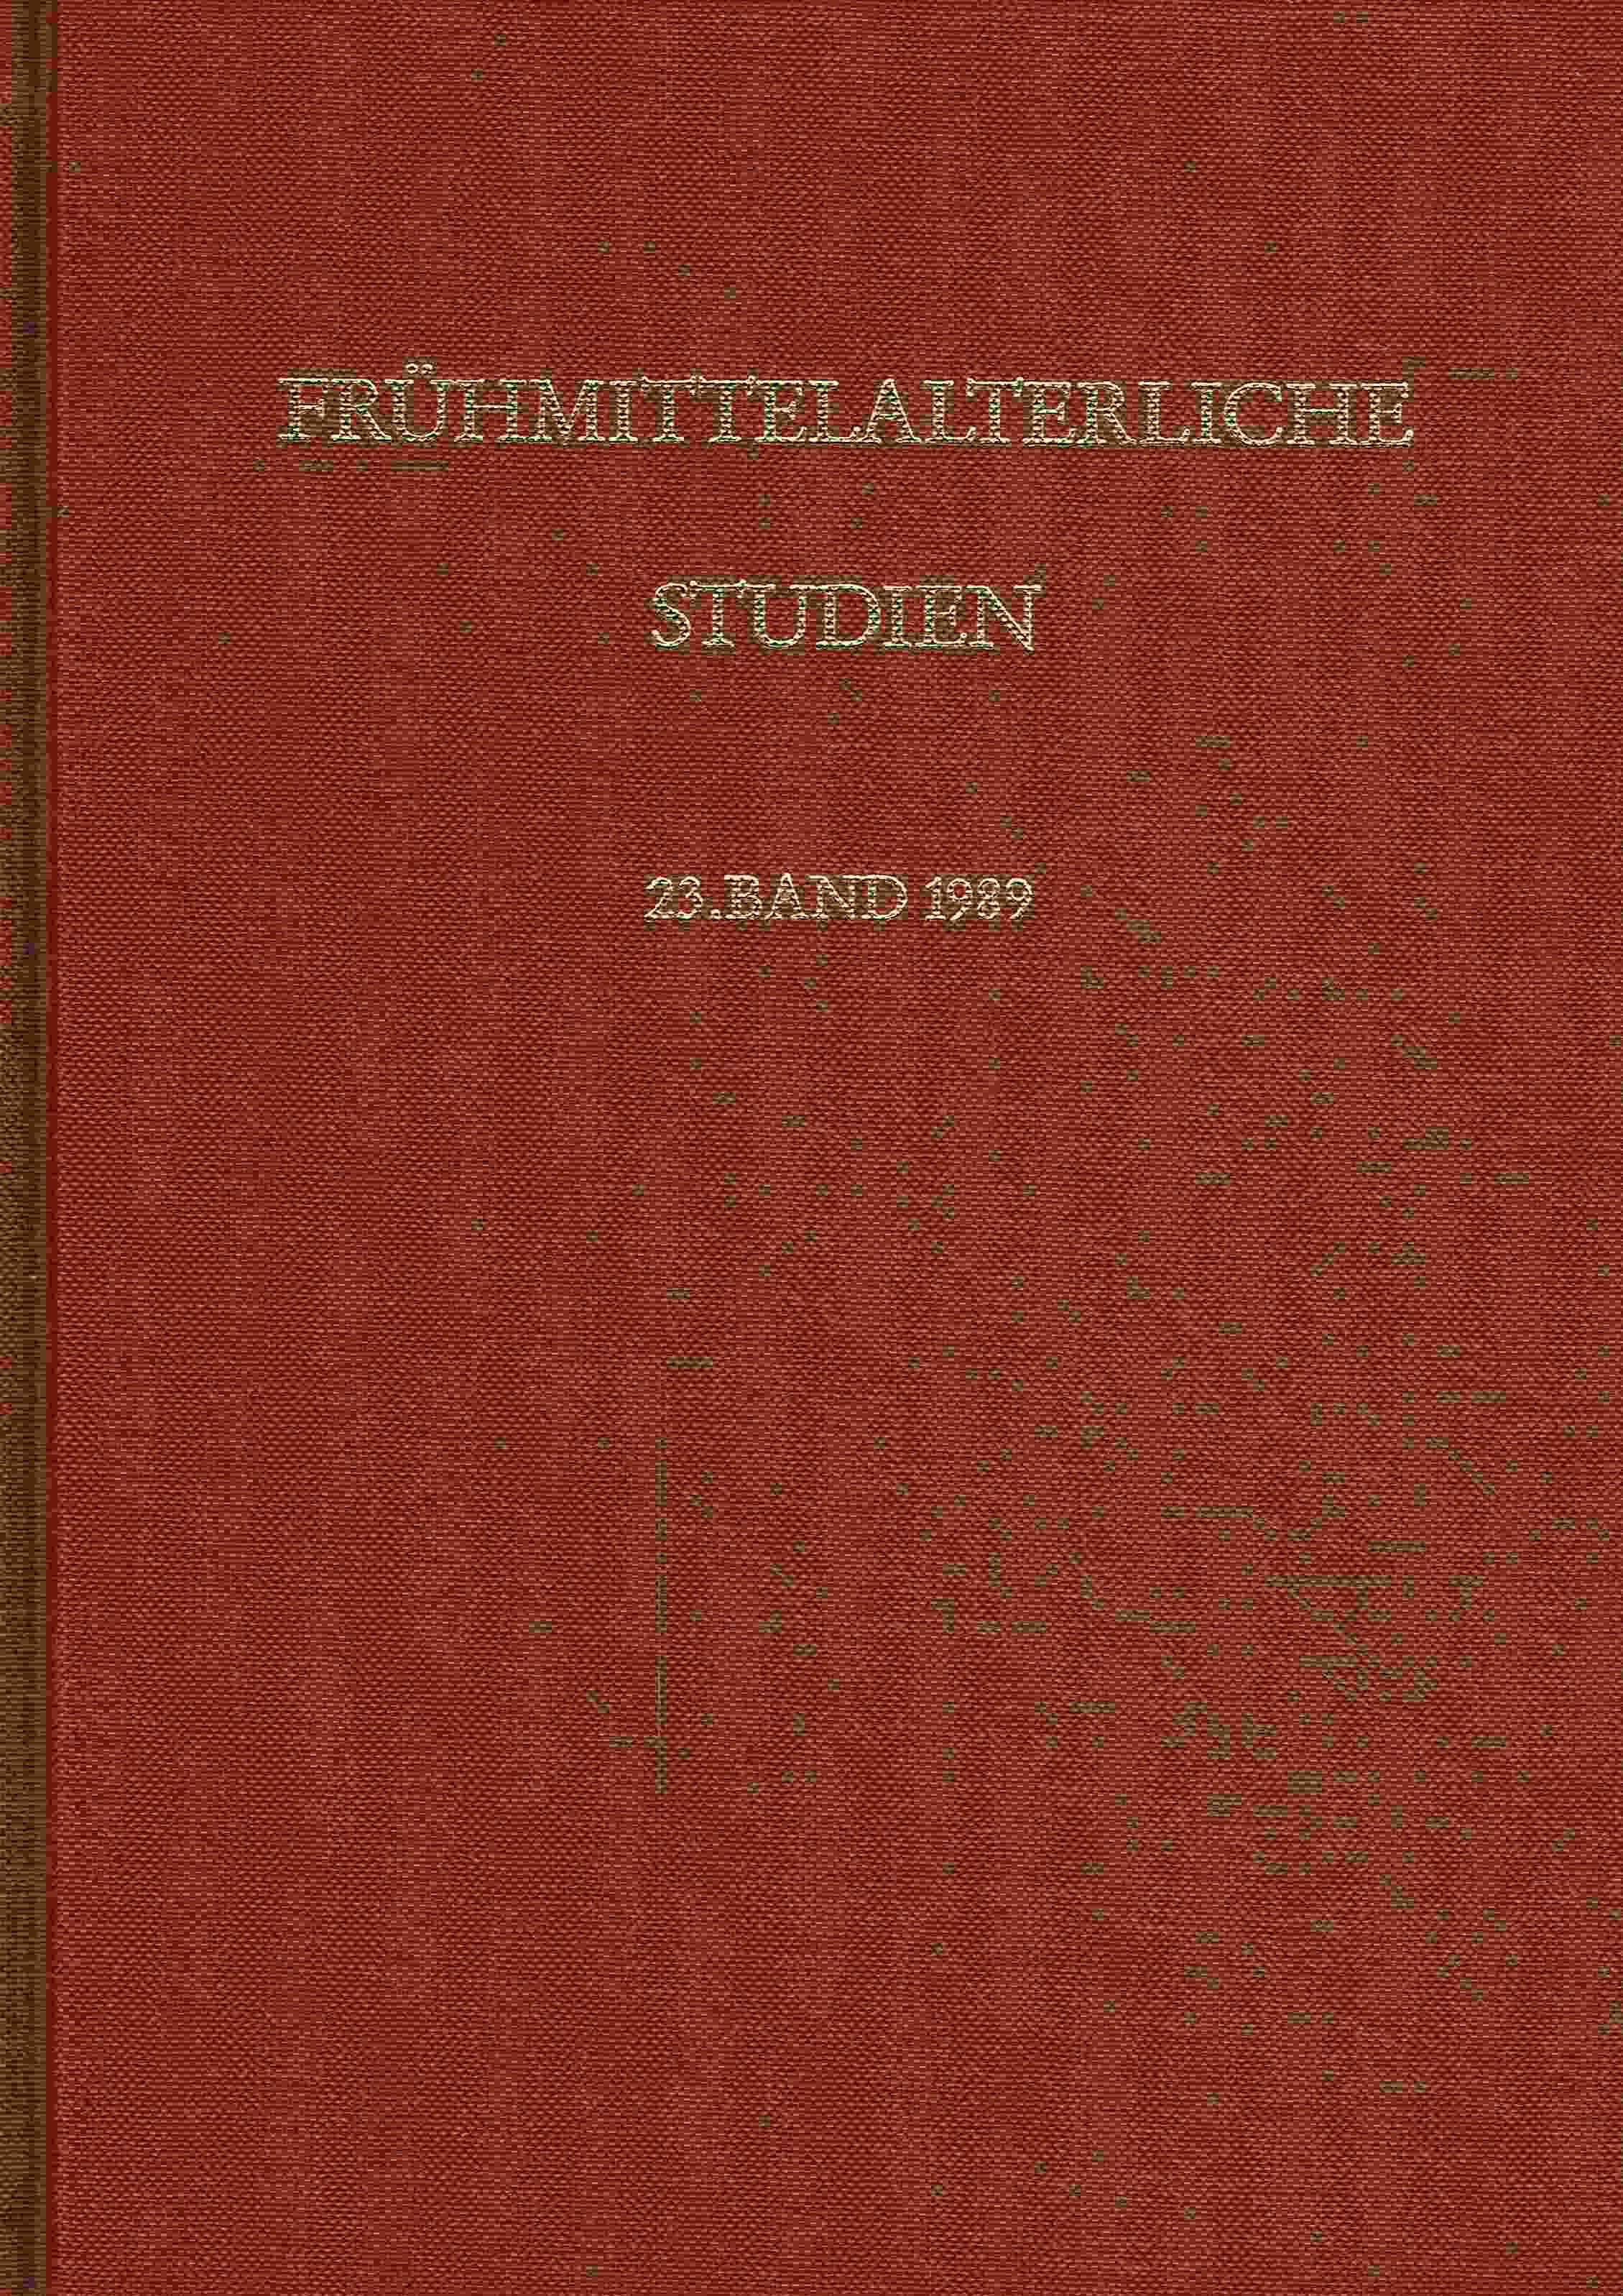 Fruehmittelalterl Studien Jahrbuch BD 23. - Hauck, Karl (Hrsg.)